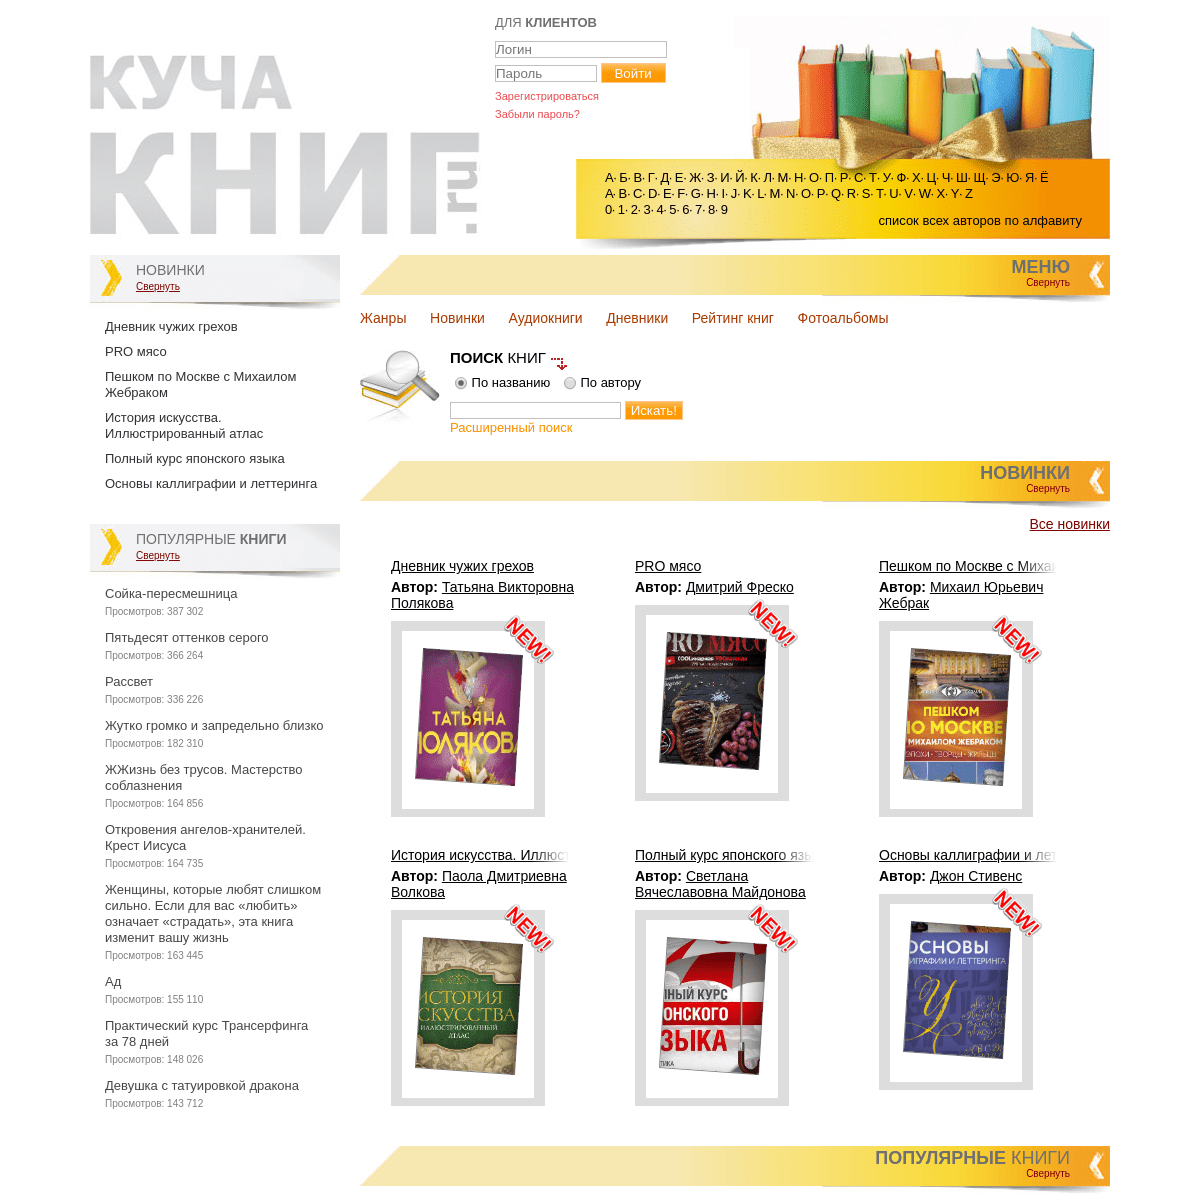 A complete backup of kuchaknig.ru